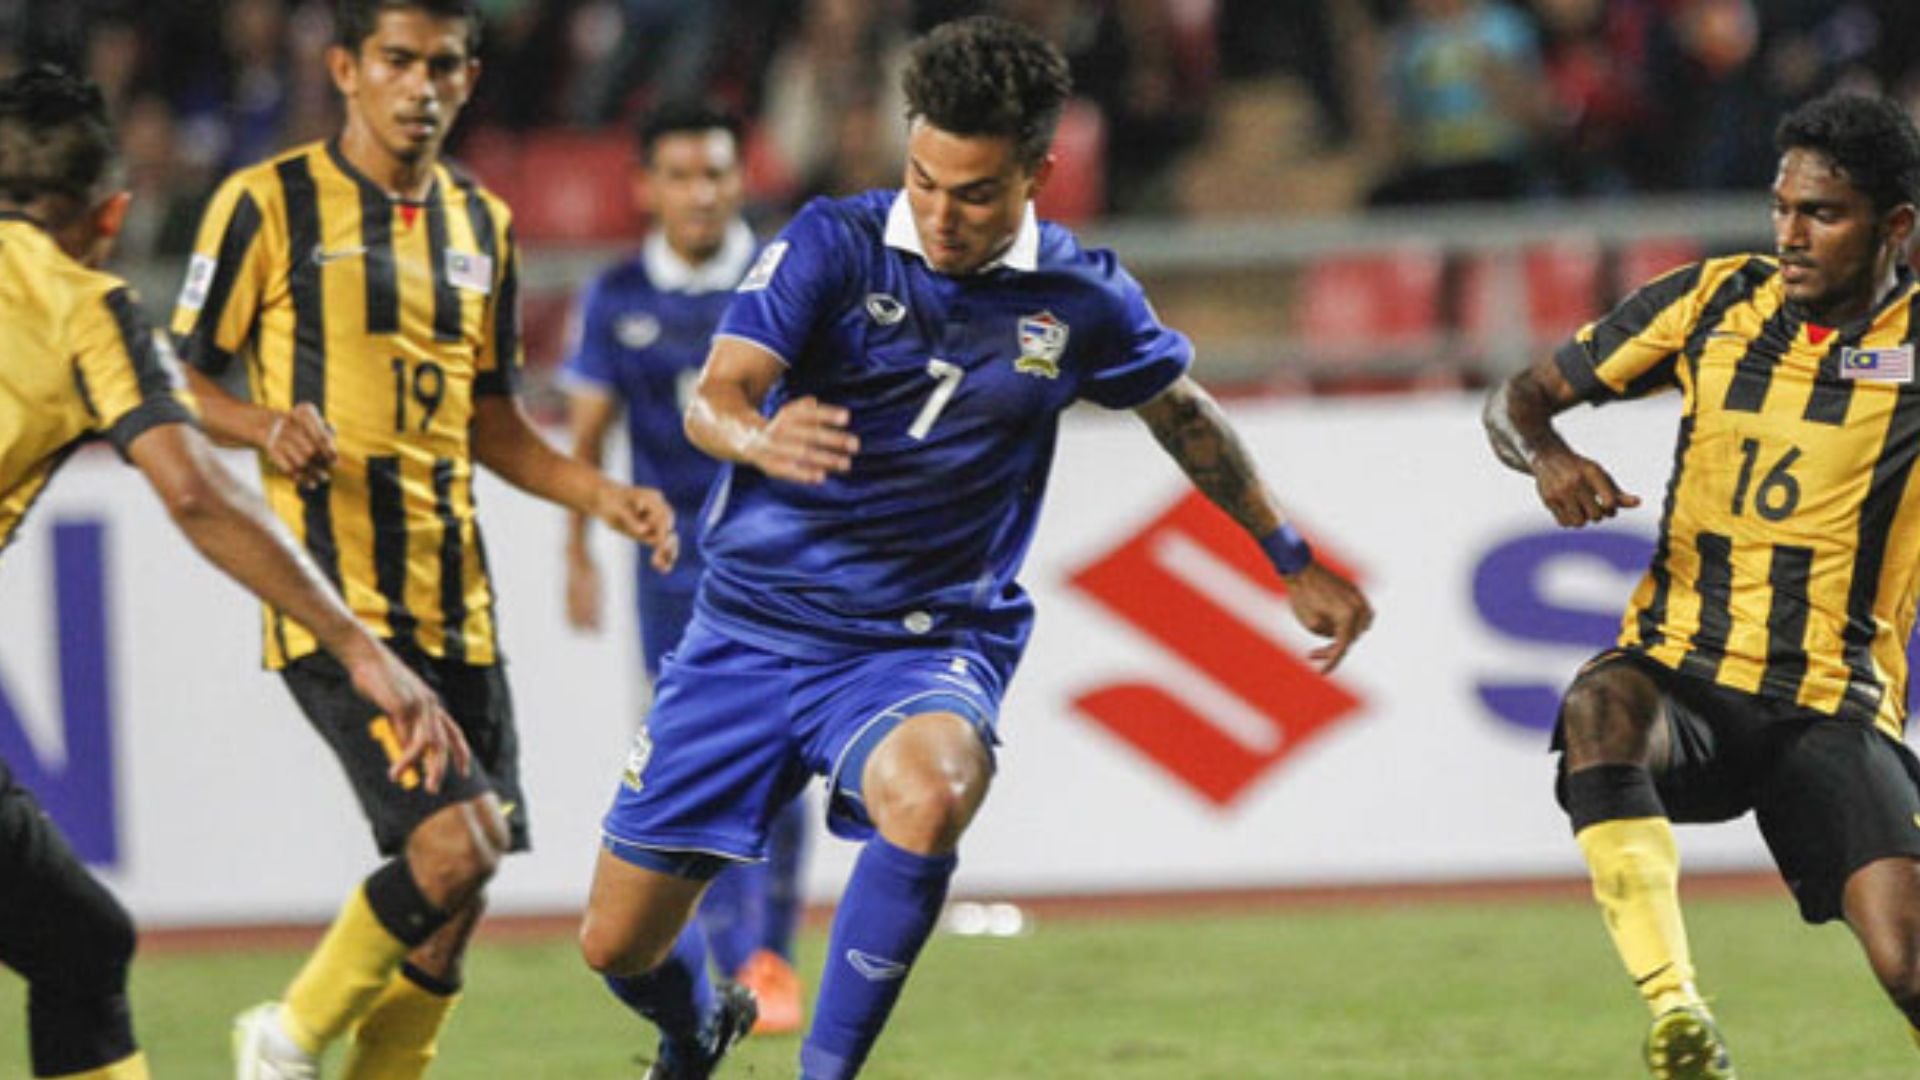 Bekas Bintang Piala AFF Thailand Tersisih Ke Kelab Divisyen Dua